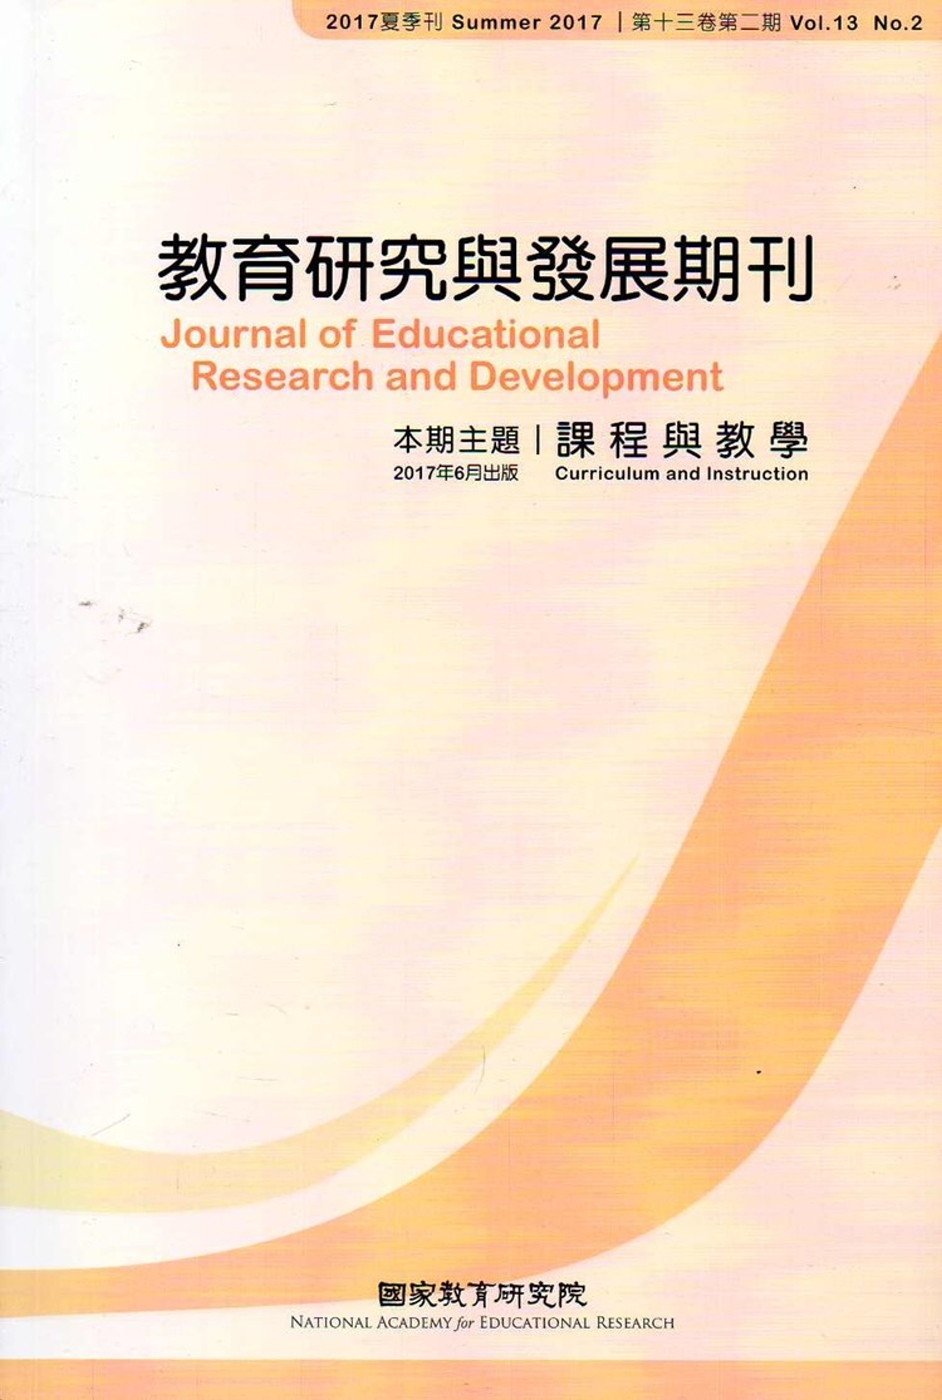 教育研究與發展期刊第13卷2期(106年夏季刊)